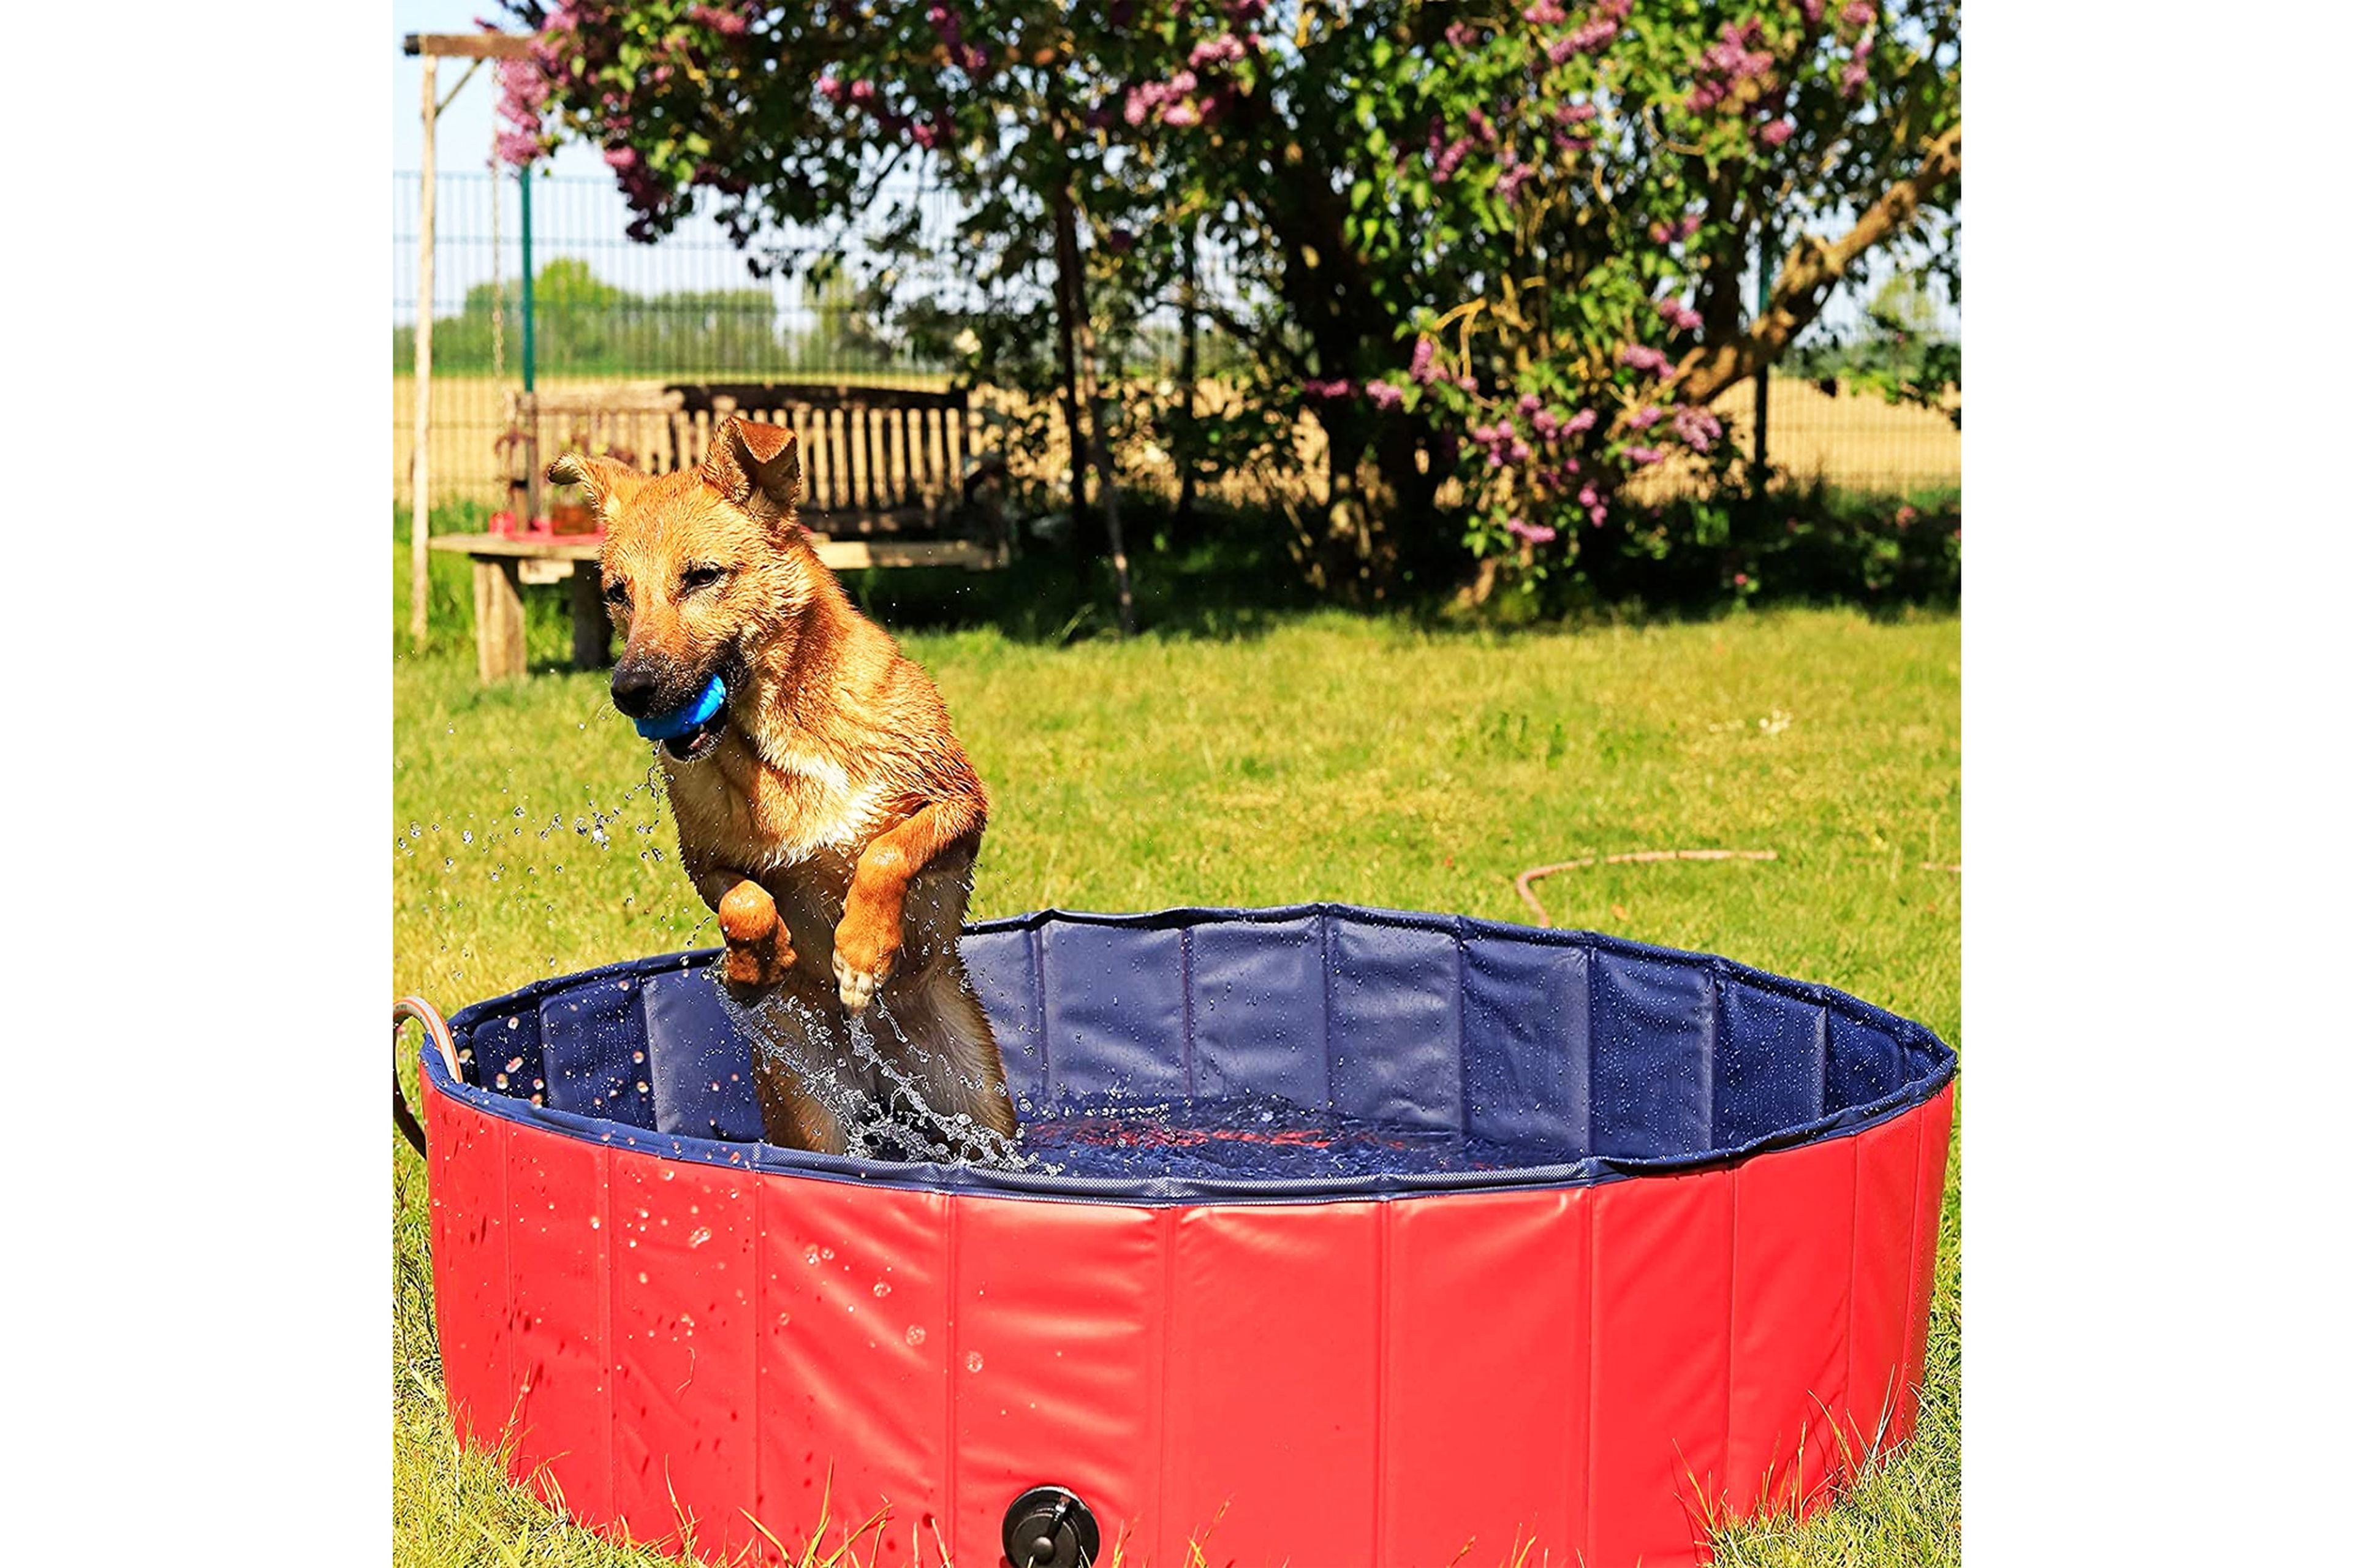 Mejores piscinas para perros que puedes comprar en verano